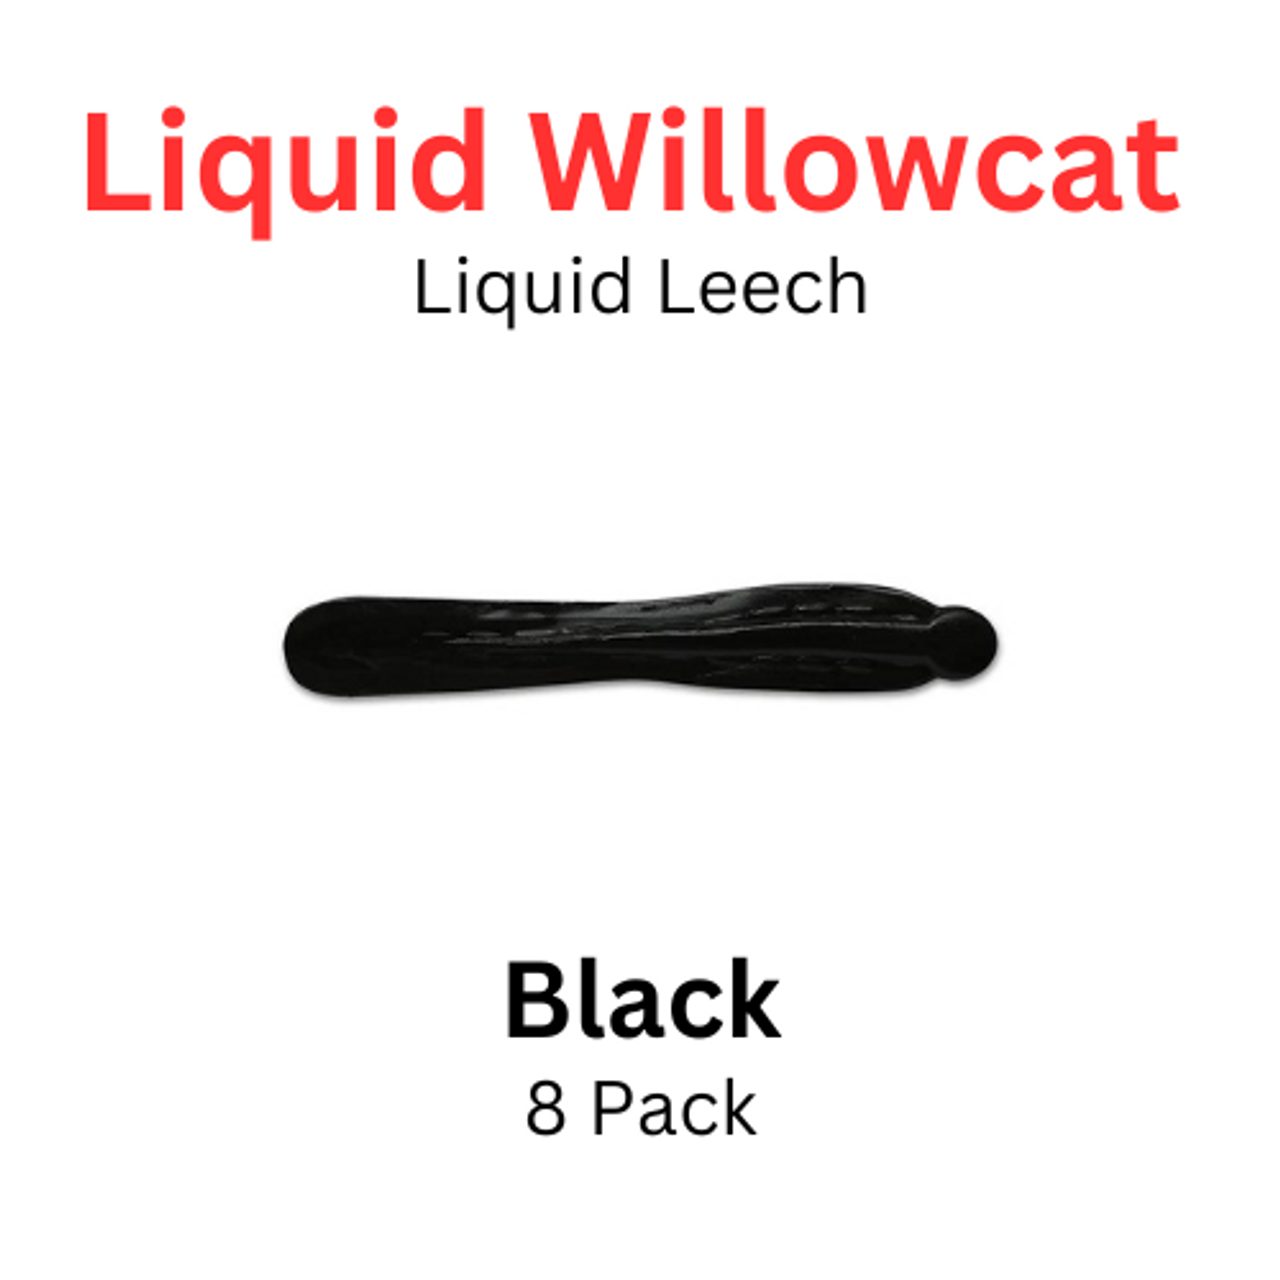 https://cdn11.bigcommerce.com/s-u9nbd/images/stencil/1280x1280/products/6713/17126/Liquid_willowcat_liquid_leech_black_8_pk___62706.1709234052.png?c=2